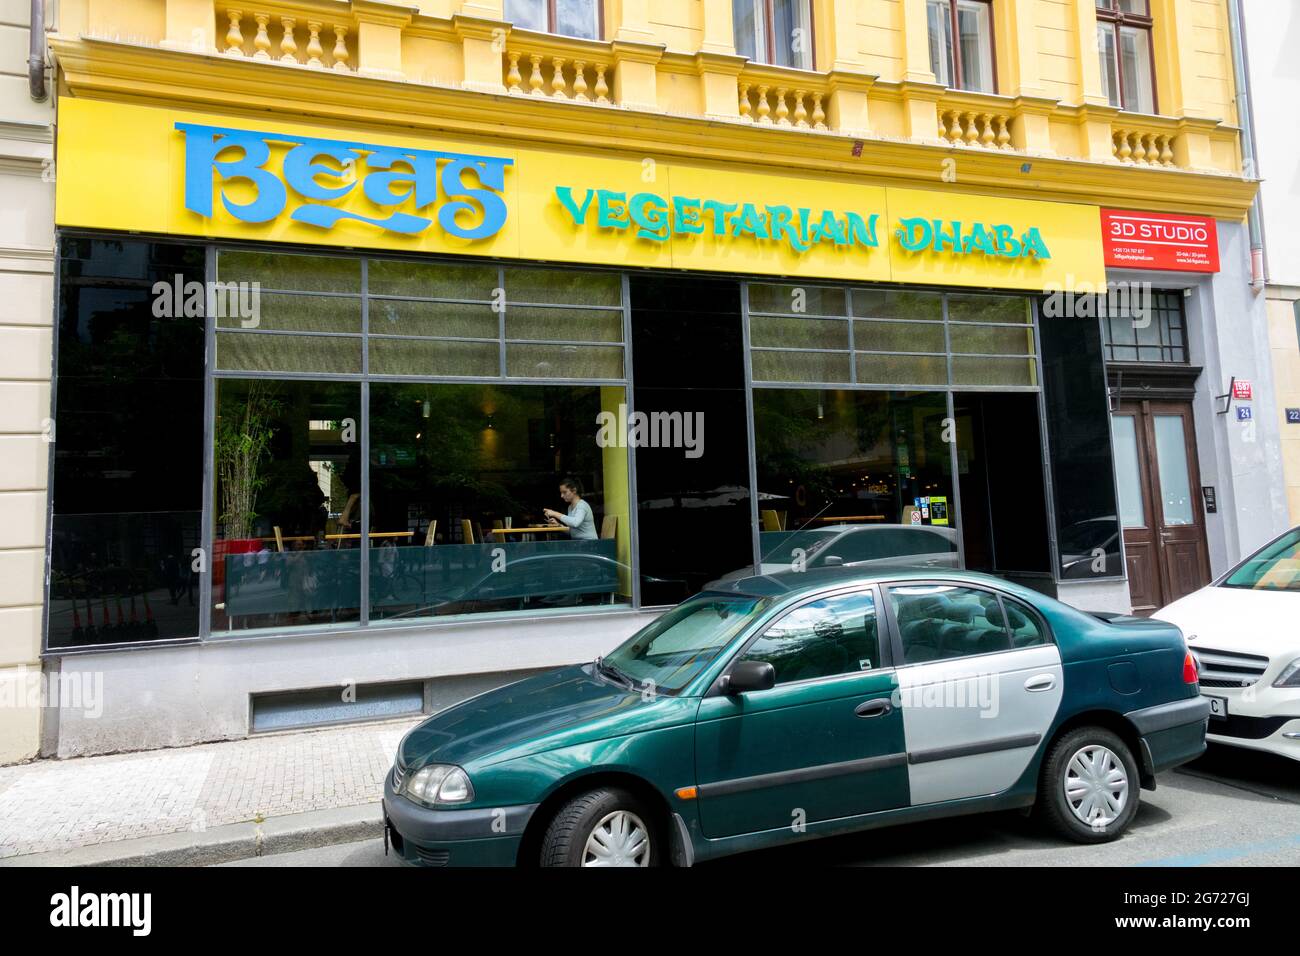 Dhaba Beas Restaurante vegetariano y vegetariano Praga República Checa Foto de stock